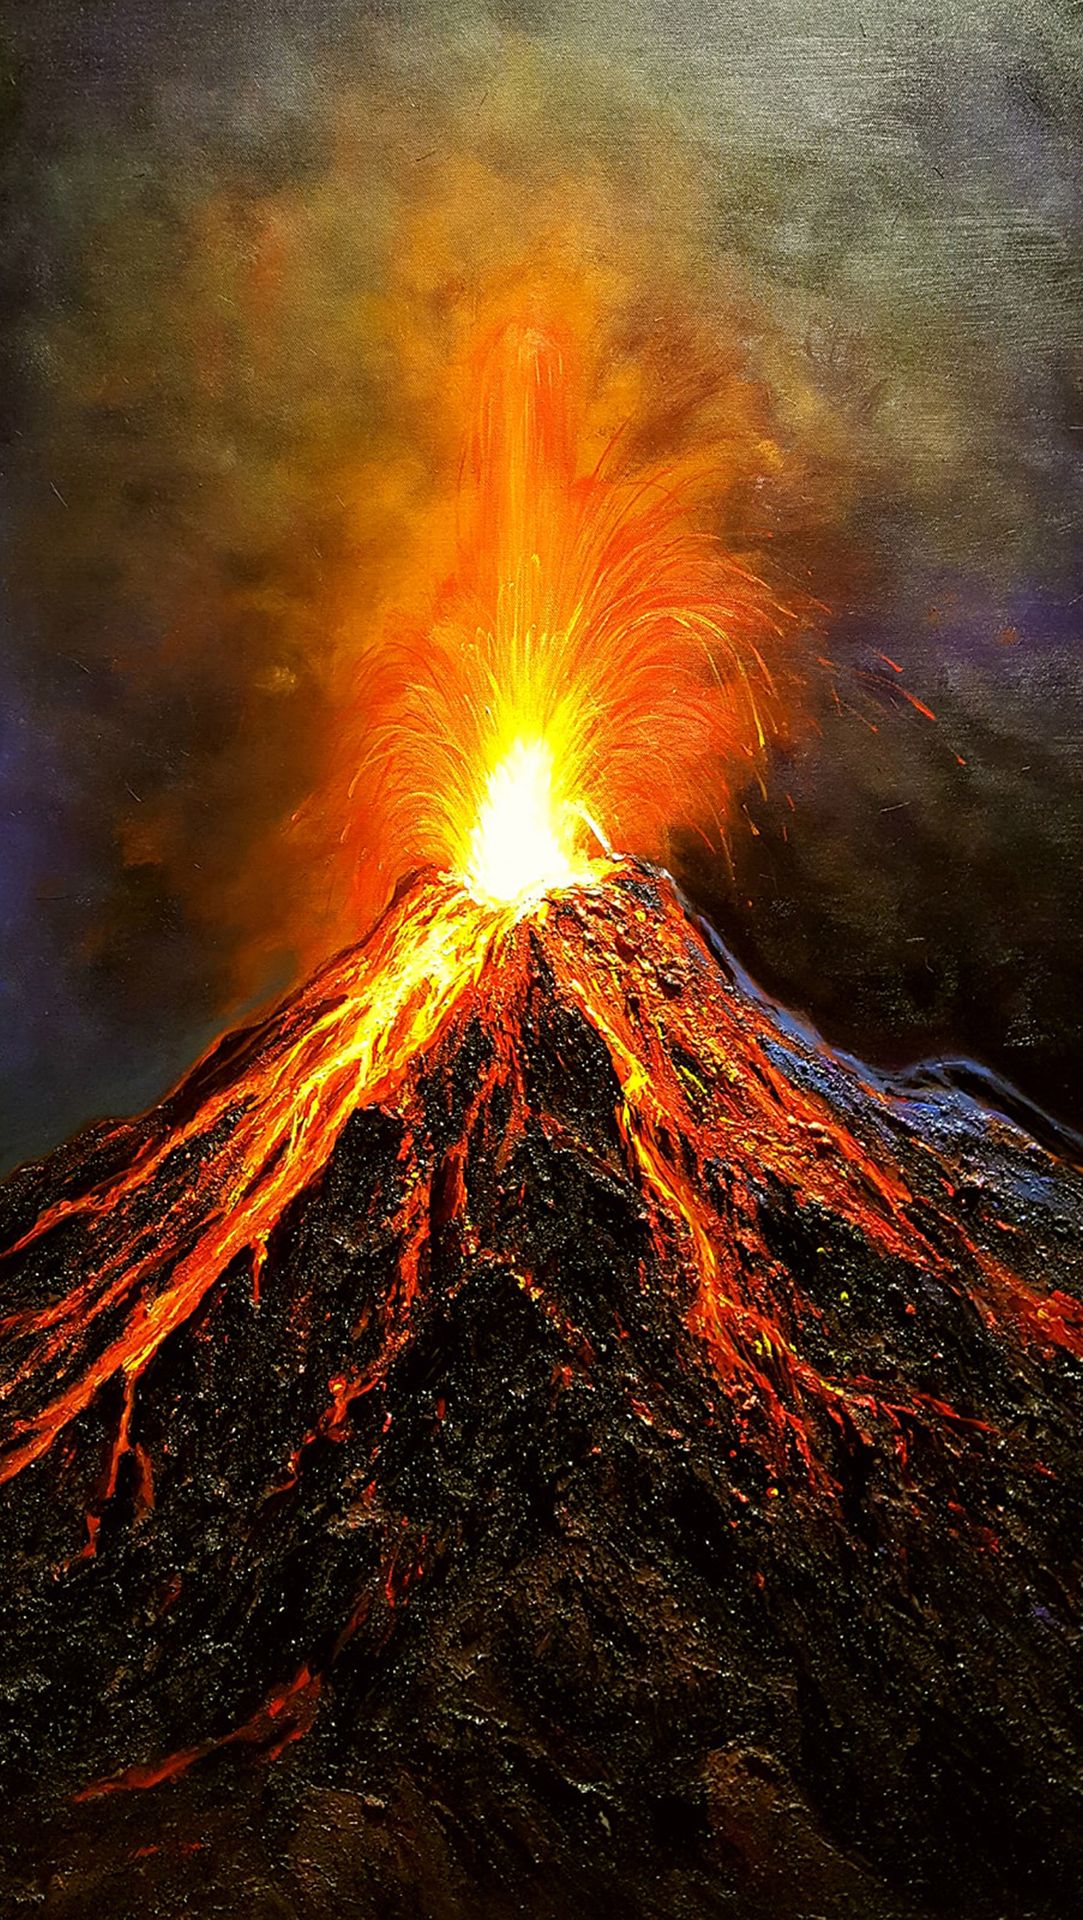 Phun trào: Muốn thấy những bức ảnh đẹp về cảnh phun trào nước, lửa và tro bụi? Hãy thưởng thức những hình ảnh đẹp nhất về sự phun trào đầy mạnh mẽ và kỳ diệu của thiên nhiên. Bạn sẽ không thể rời mắt trước sự rực rỡ và mãnh liệt của cảnh phun trào.